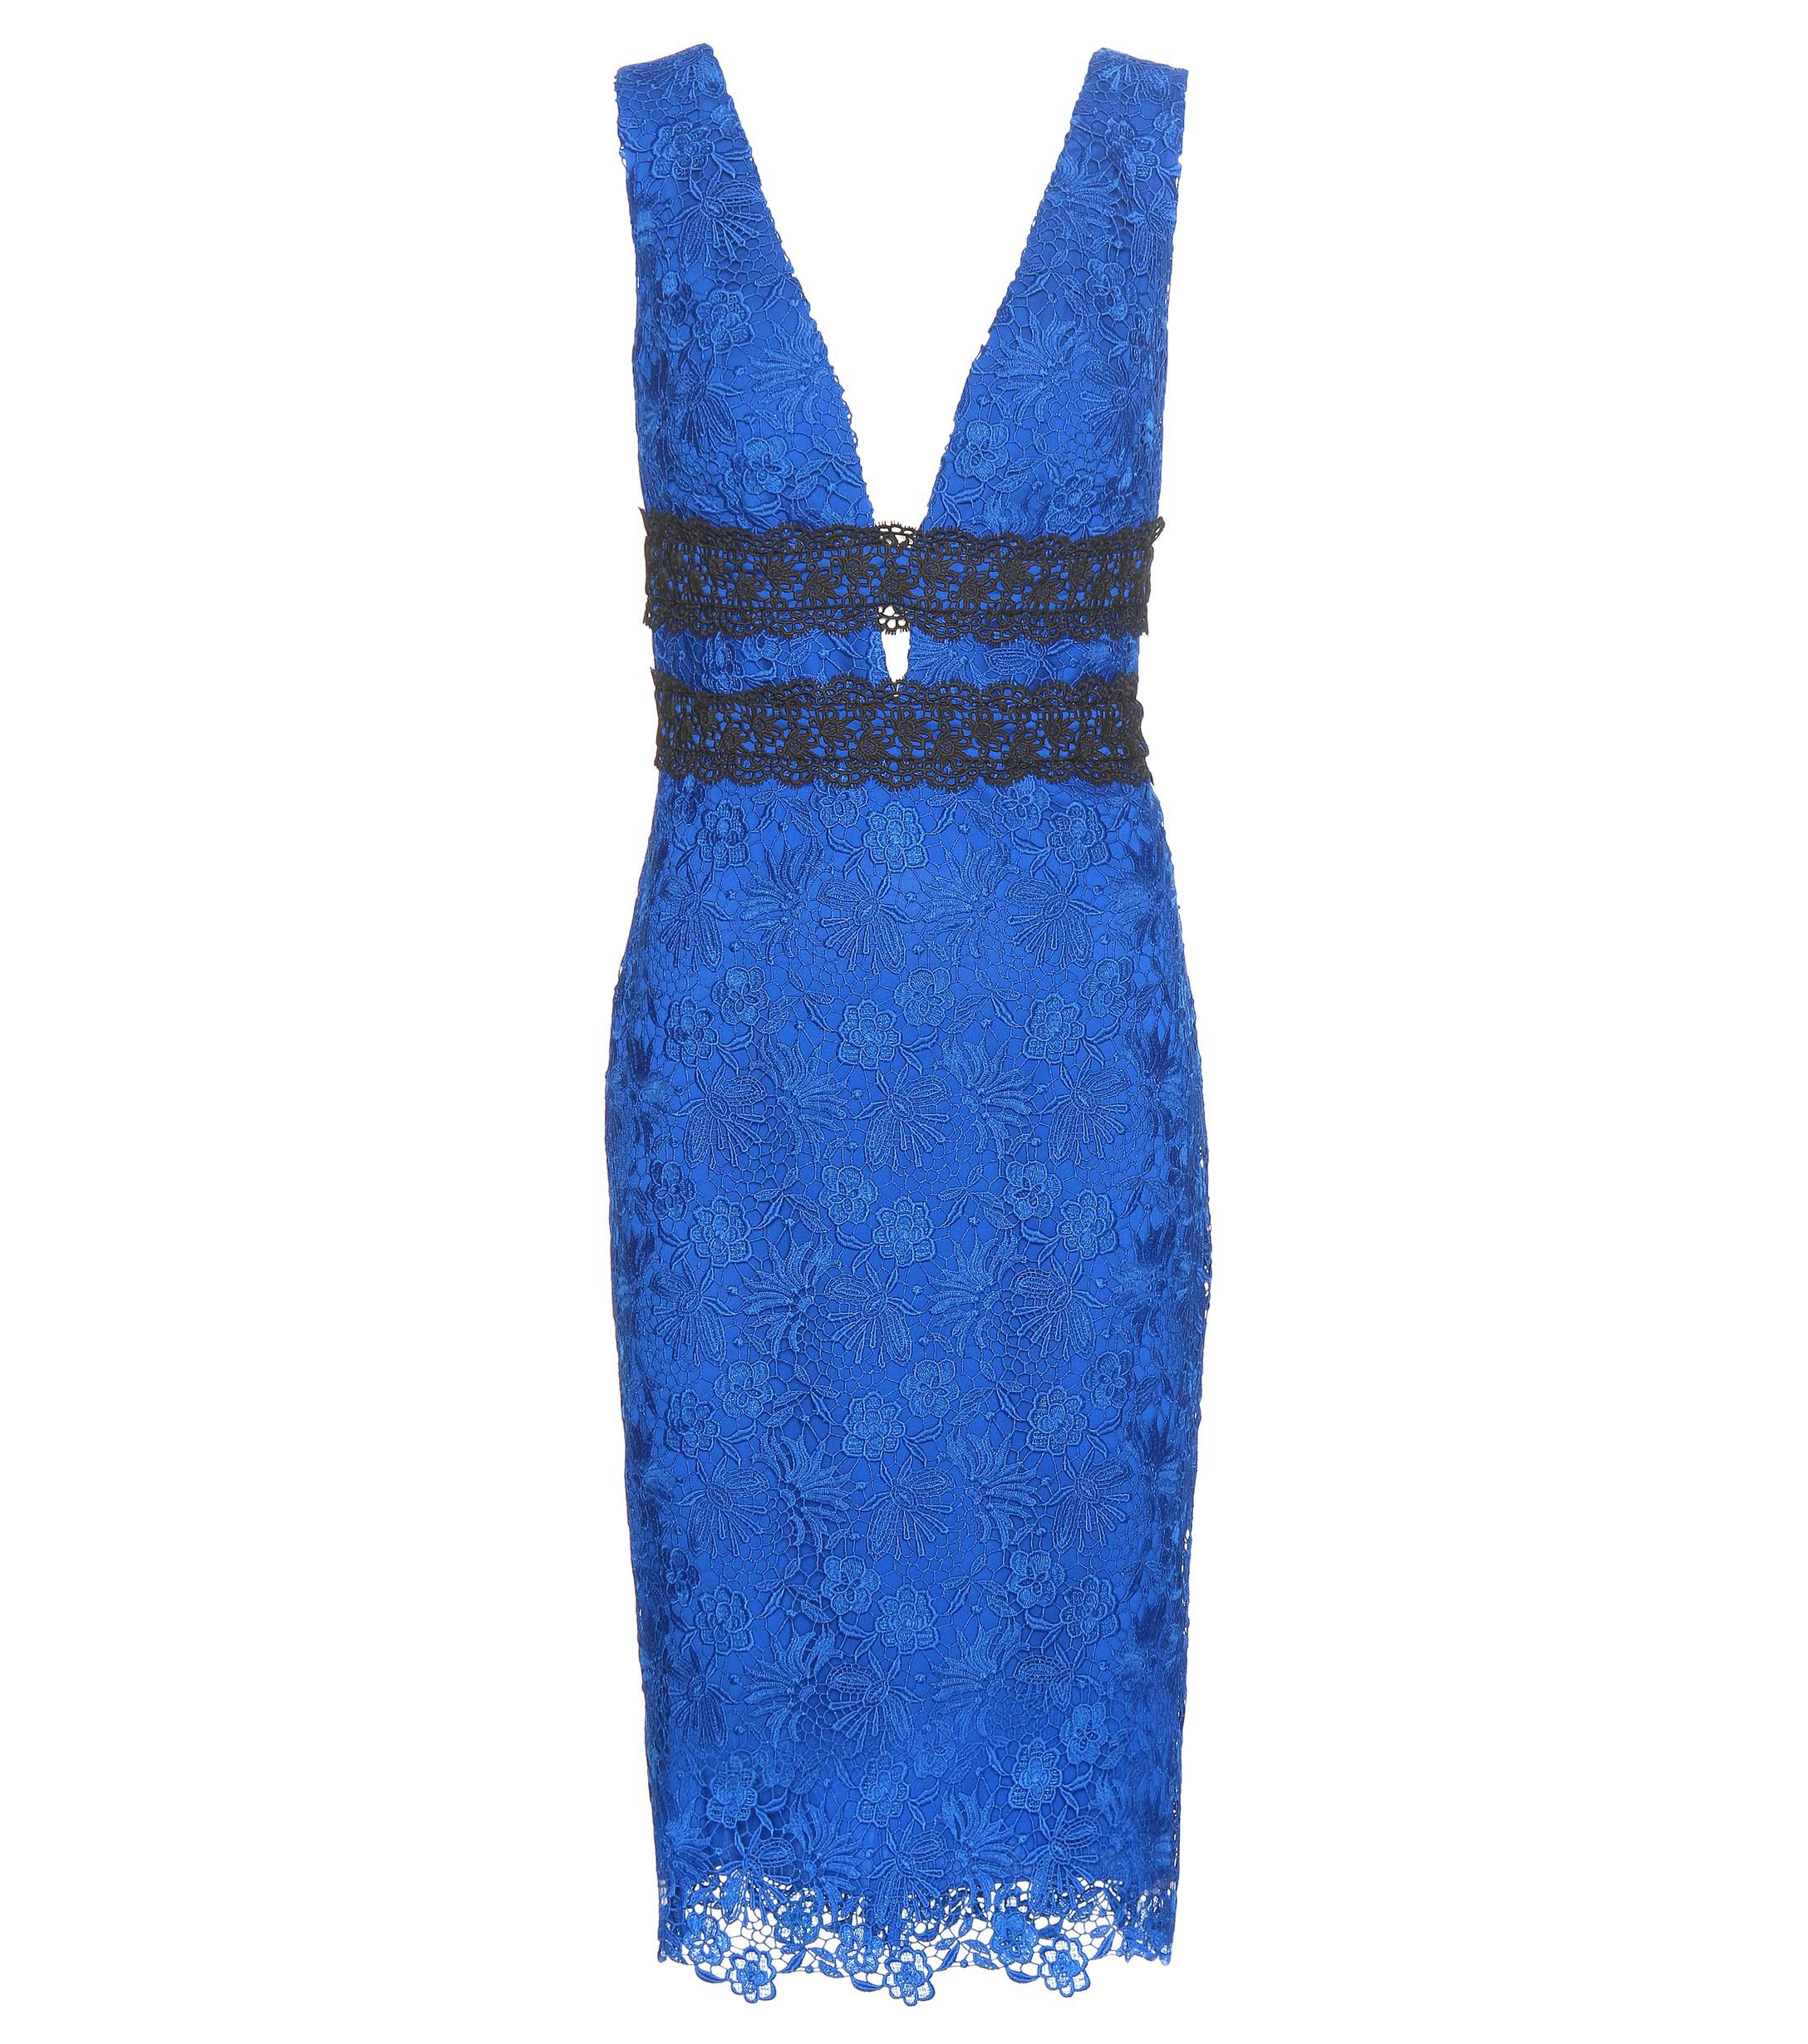 Diane von Furstenberg Viera Lace Dress in Blue - Lyst